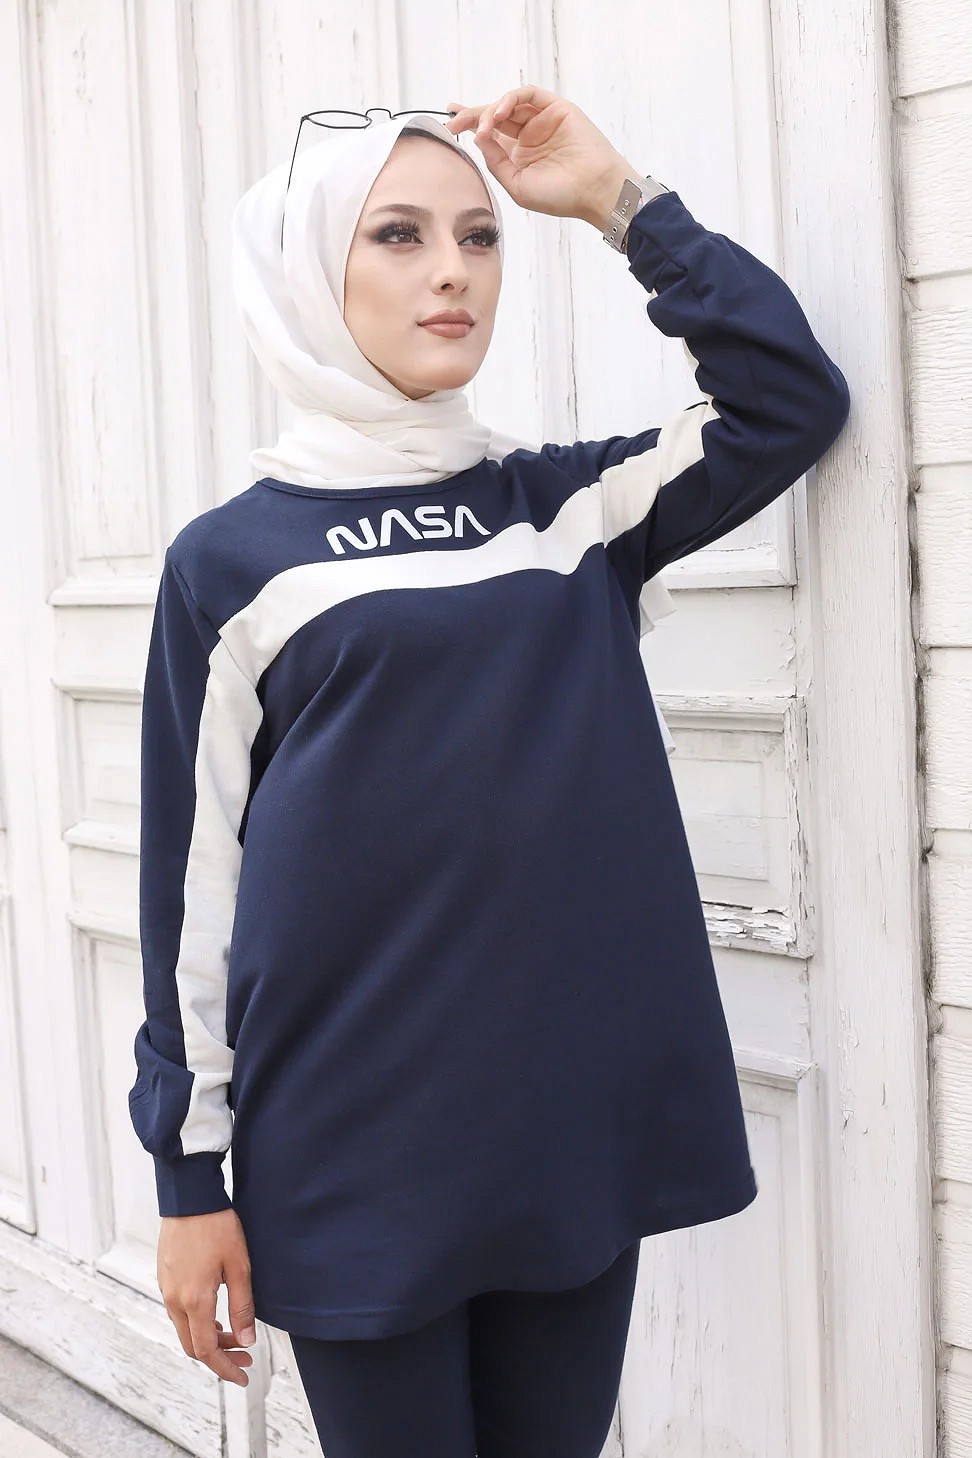 Ensemble survêtement - Tenue pour femme voilée (Hijab sport Turquie pas  cher) - Couleur gris